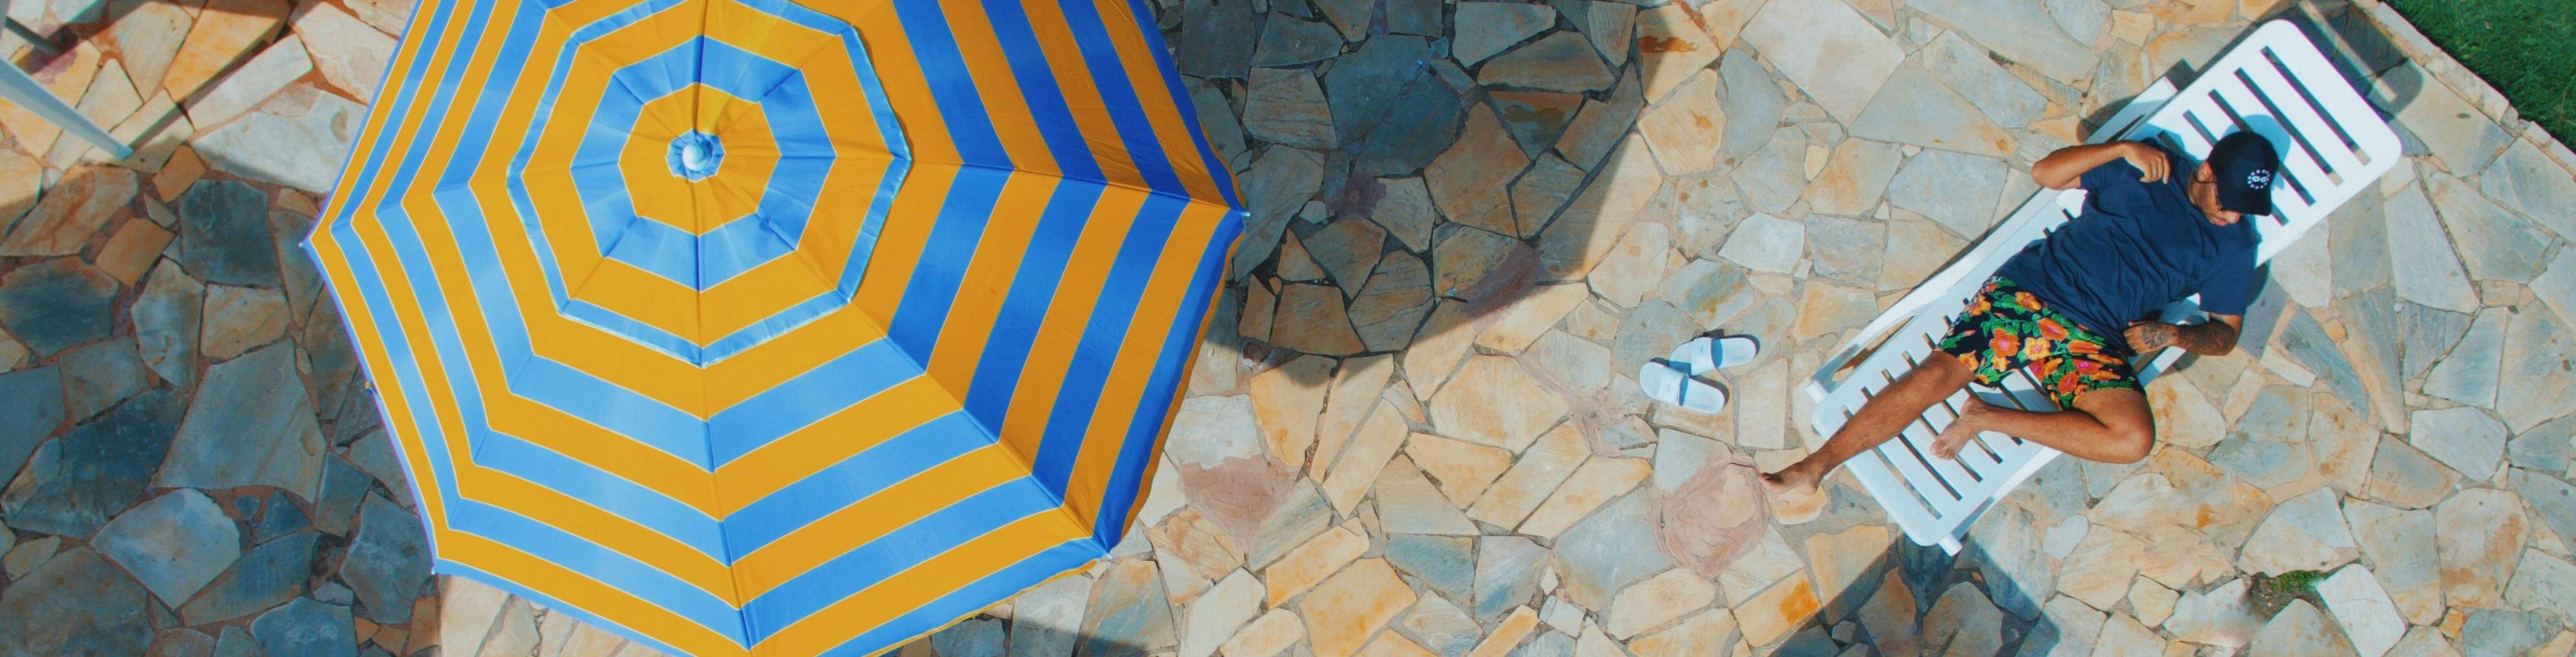 Gestreifter Sonnenschirm auf einer Steinterrasse zusammen mit einem Mann beim Sonnenbaden